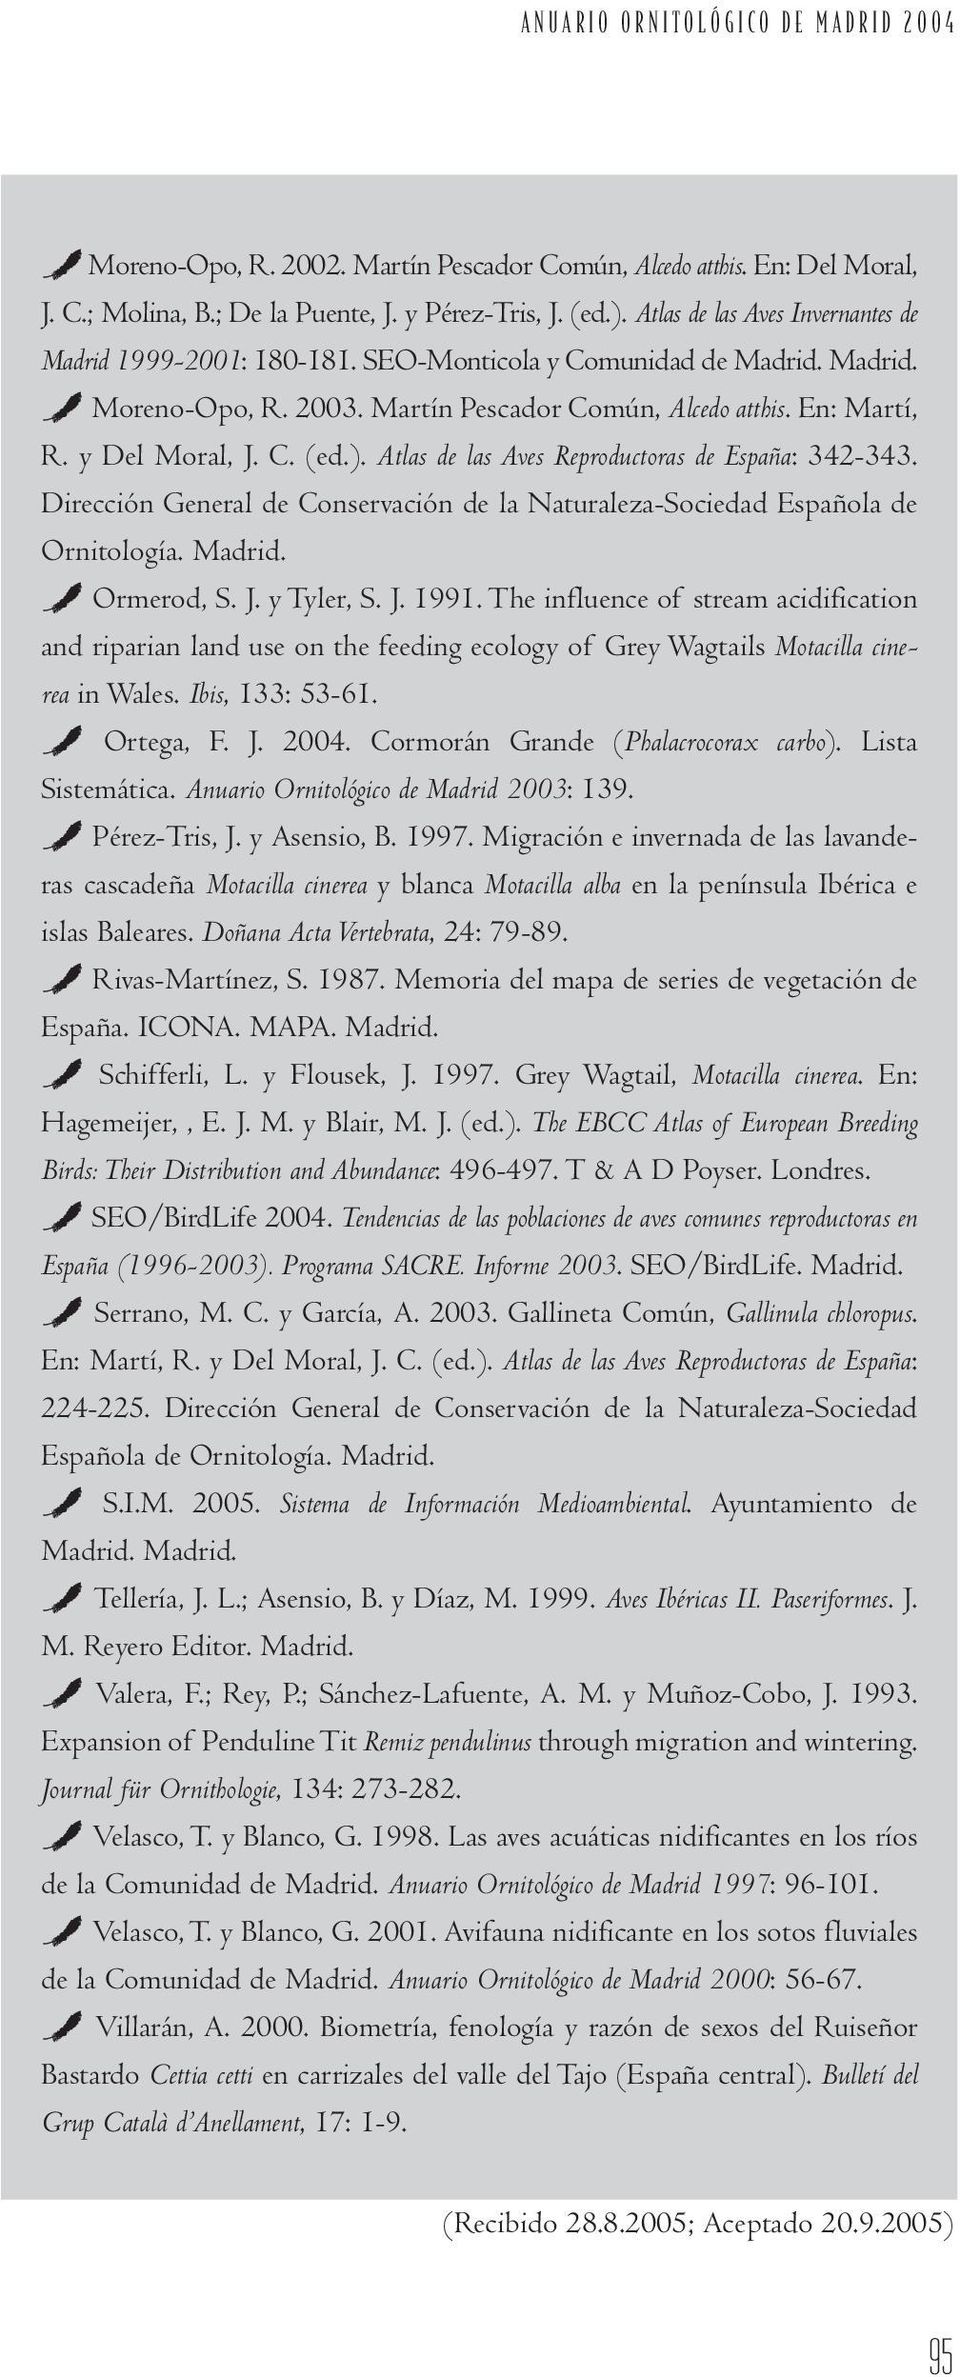 ). Atlas de las Aves Reproductoras de España: 342-343. Dirección General de Conservación de la Naturaleza-Sociedad Española de Ornitología. Madrid. ` Ormerod, S. J. y Tyler, S. J. 1991.